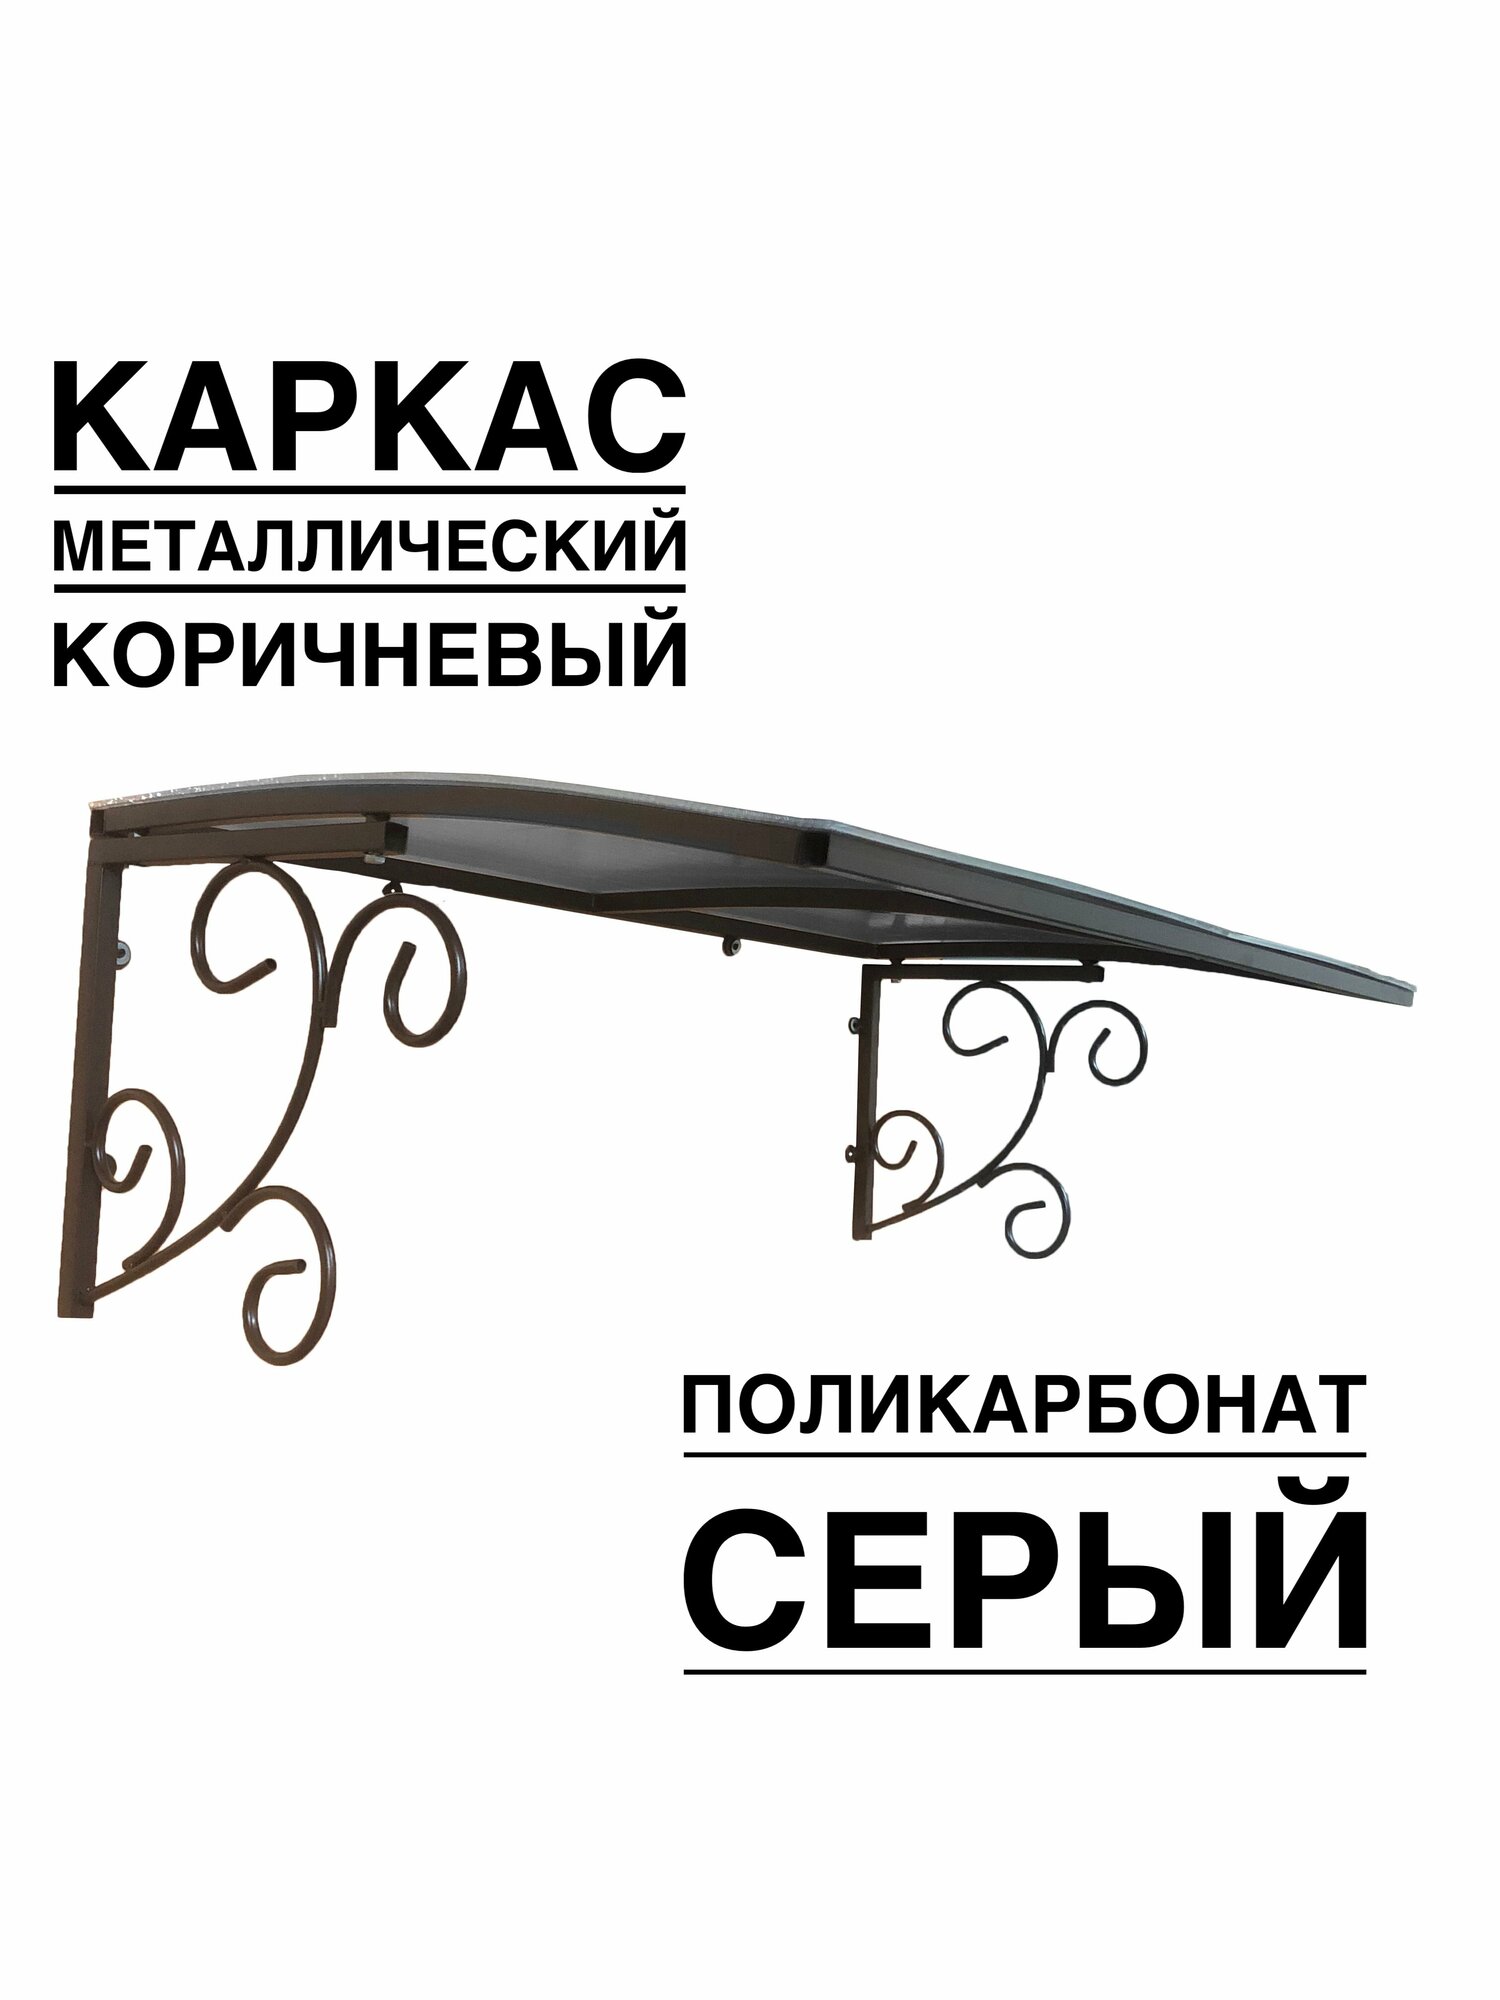 Козырек металлический над входной дверью, над крыльцом YS134SK коричневый каркас с серым поликарбонатом ArtCore